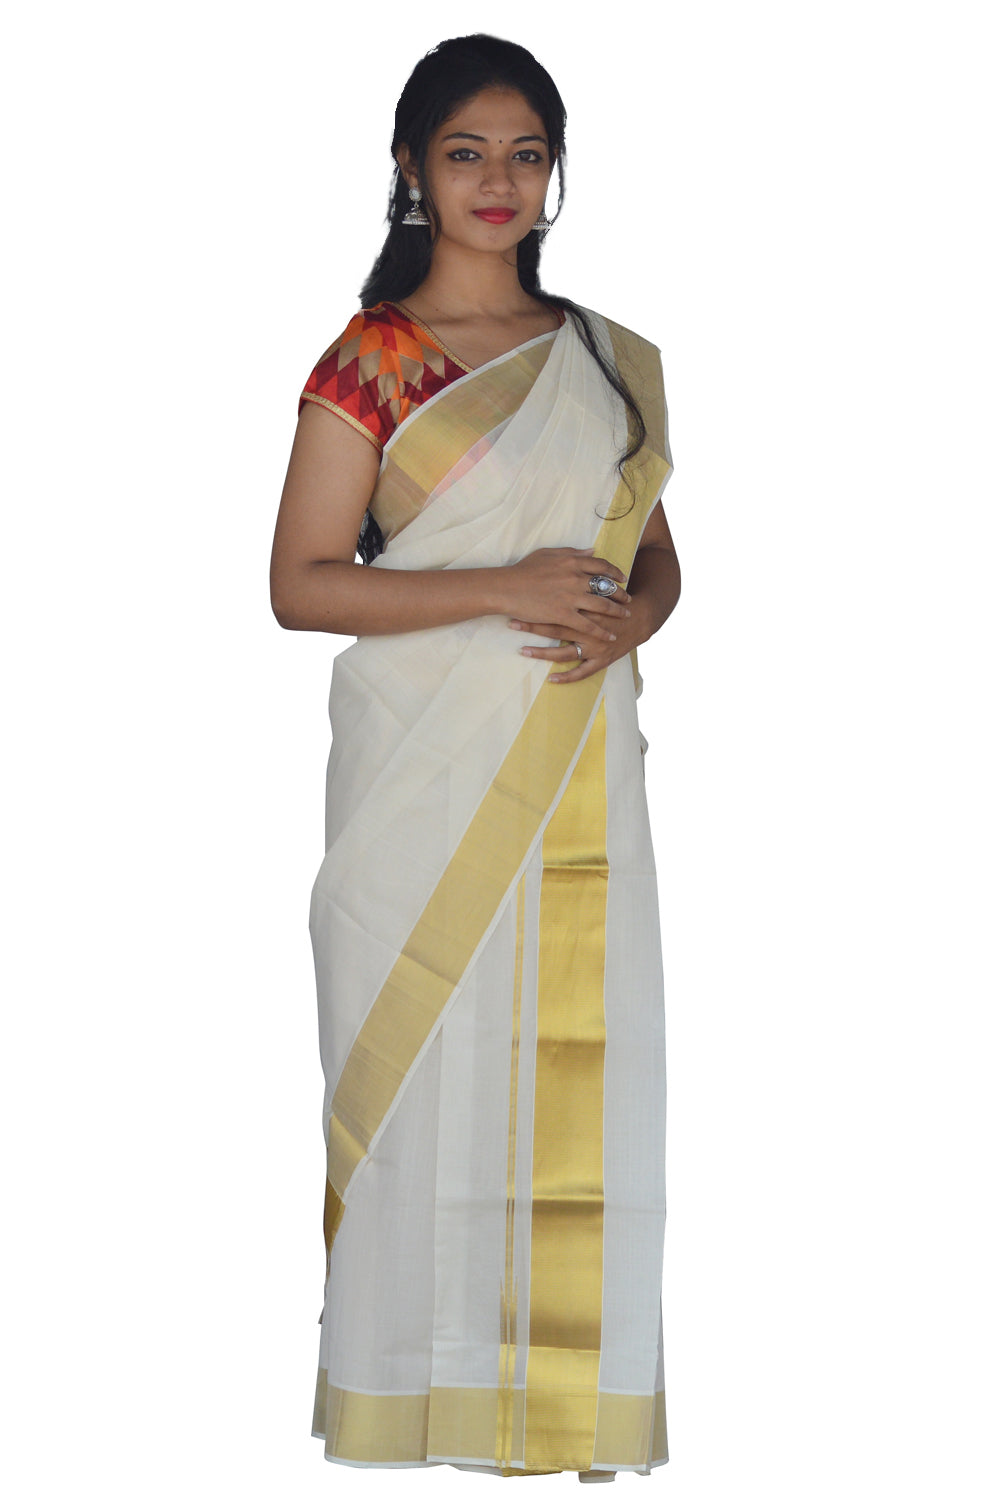 Kerala Cotton Mundum Neriyathum Single (Set Mundu) with 3 Inch Kasavu Kara 2.80 Mtrs